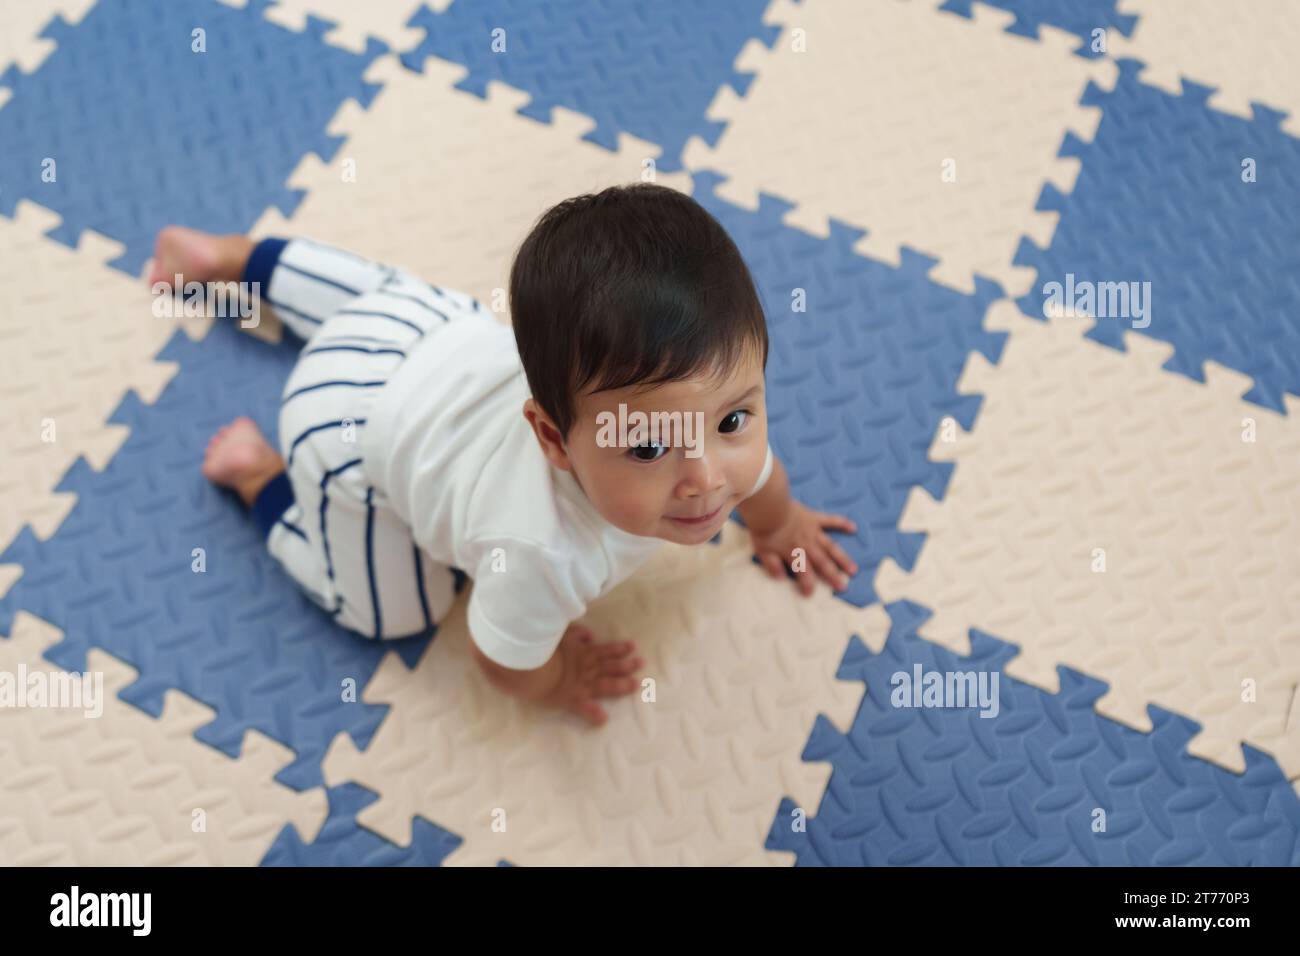 Blick von oben auf das glückliche Baby, das auf der Spielmatte oder dem Puzzle-Boden krabbelt Stockfoto